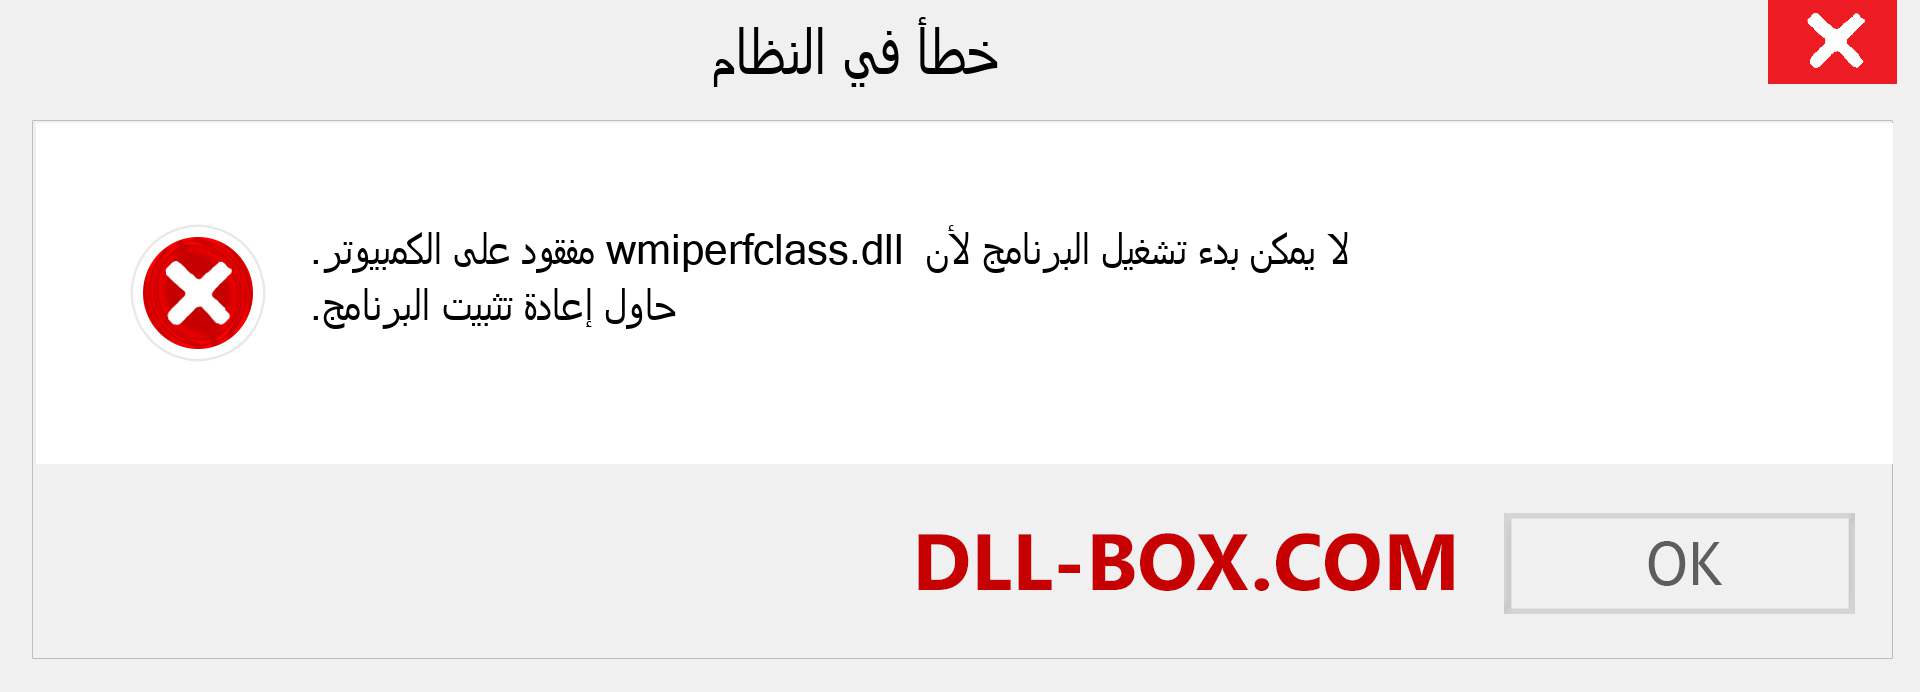 ملف wmiperfclass.dll مفقود ؟. التنزيل لنظام التشغيل Windows 7 و 8 و 10 - إصلاح خطأ wmiperfclass dll المفقود على Windows والصور والصور